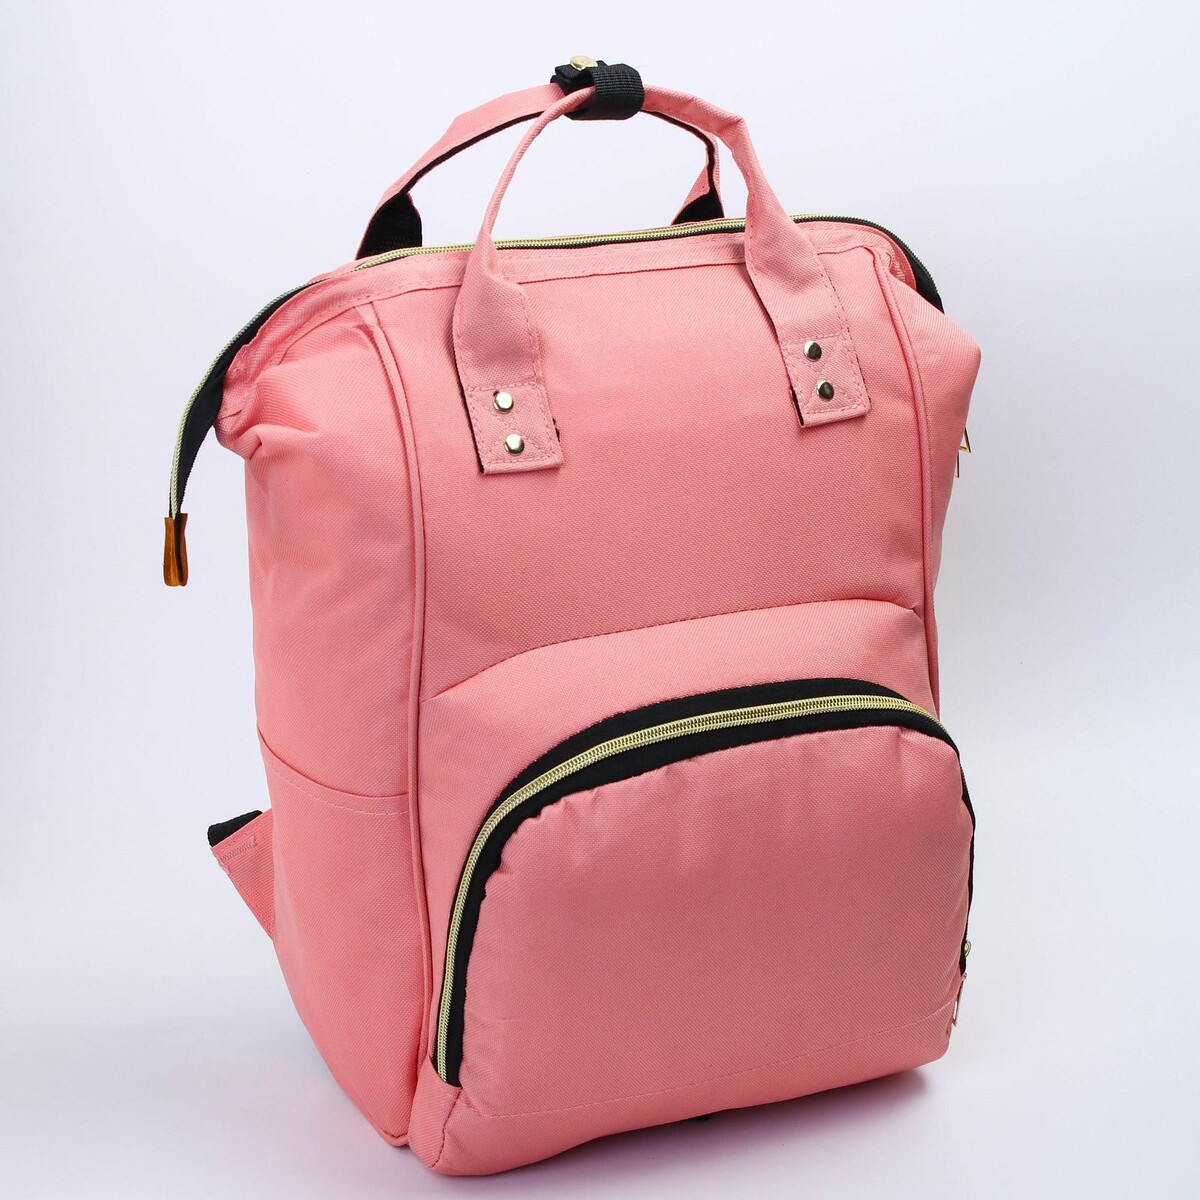 Рюкзак женский с термокарманом, термосумка - портфель, цвет розовый рюкзак deuter freerider 24 sl женский 54х28х20 24 л 33504 3513